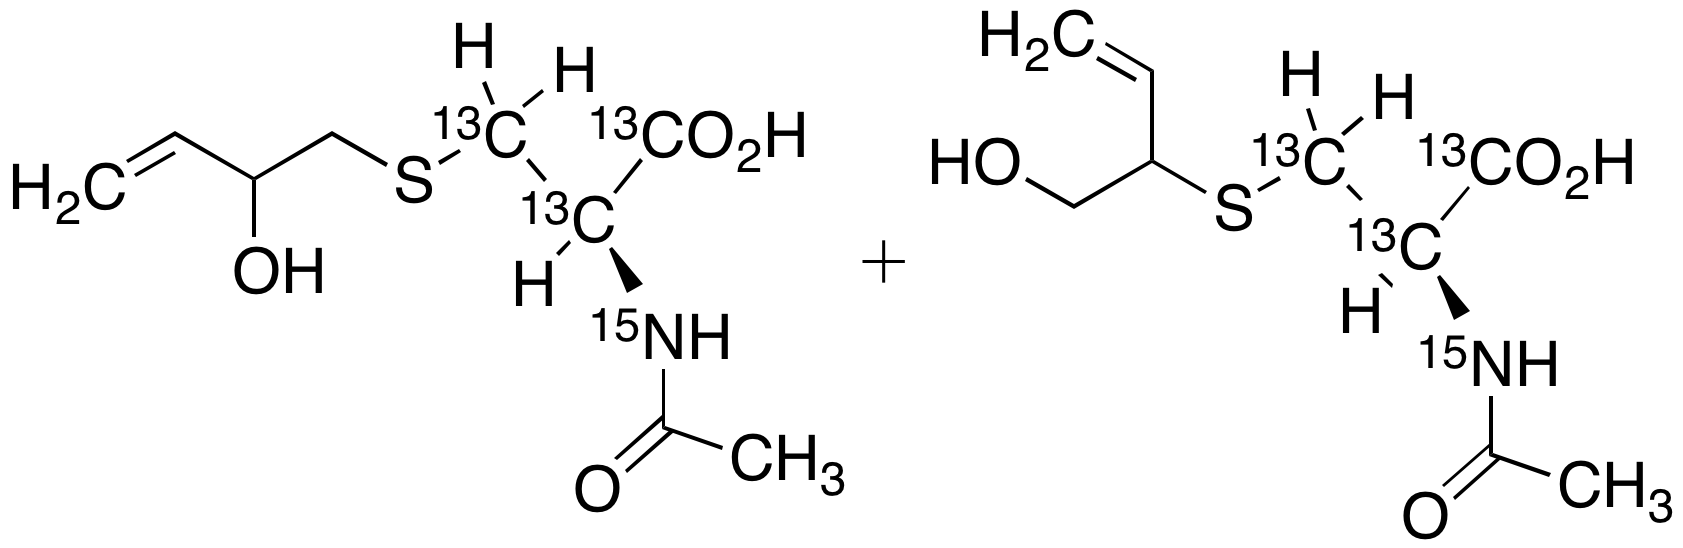 N-Acetyl-S-(2-hydroxy-3-but-3-en-1-yl)-L-Cysteine 1,2,3-13C3, 15N + N-Acetyl-S-(1-hydroxybut-3-en-2-yl)-L-Cysteine 1,2,3-13C3, 15N (Approximately 1:1 Mixture)